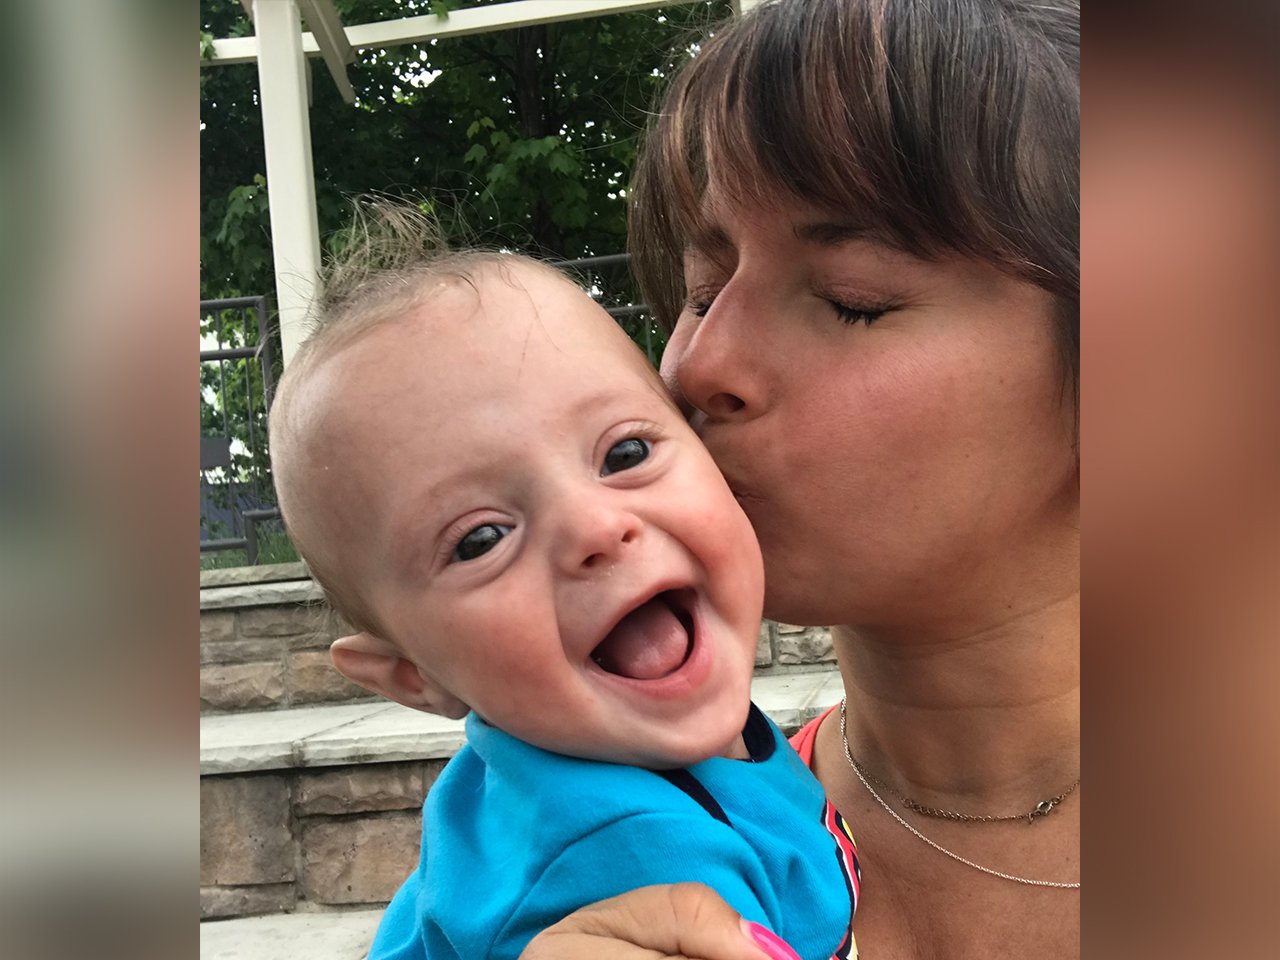 forfatter kysse søn efter at have mistet en tvilling i livmoderen